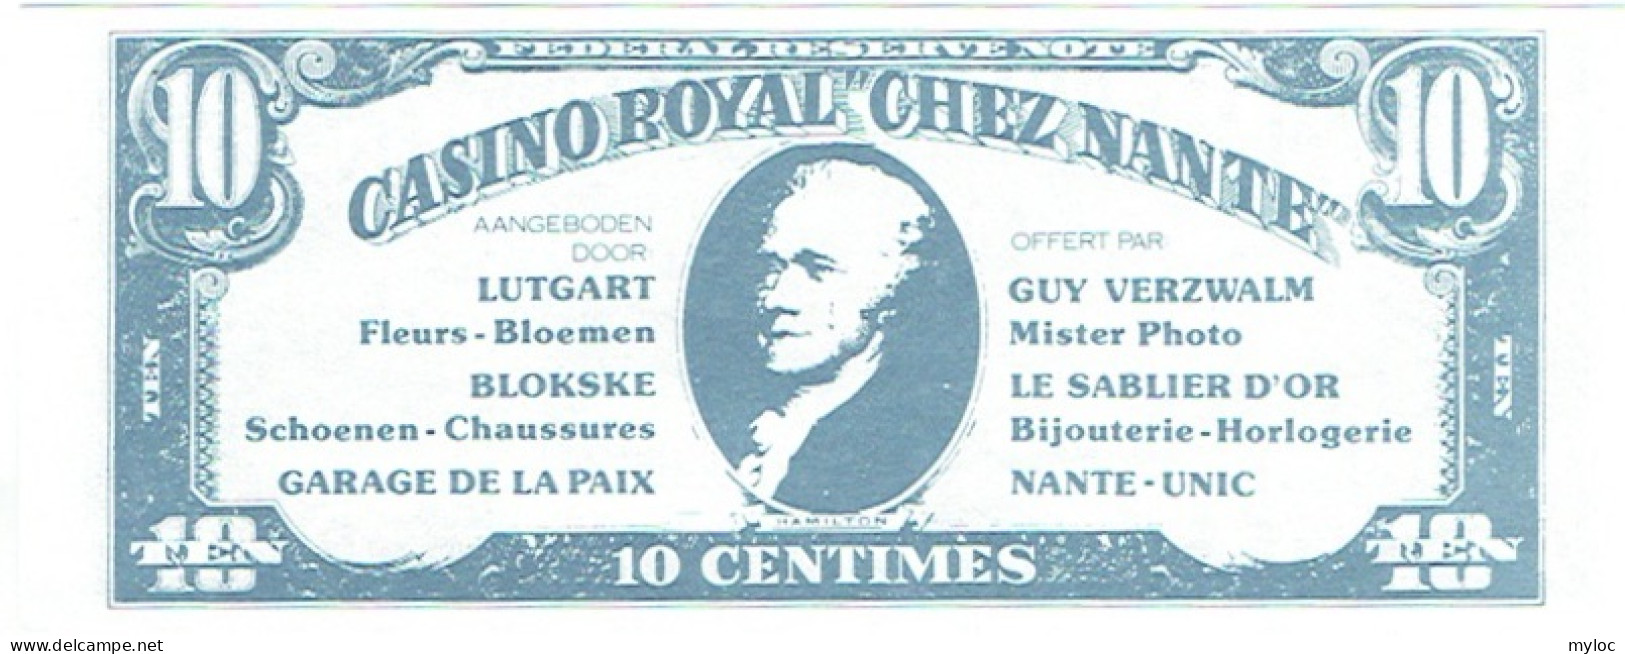 Billet Fictif. Belgique. Place De La Paix. Casino Royal "Chez Nantes". 1993. 10 Centimes. - Fictifs & Spécimens